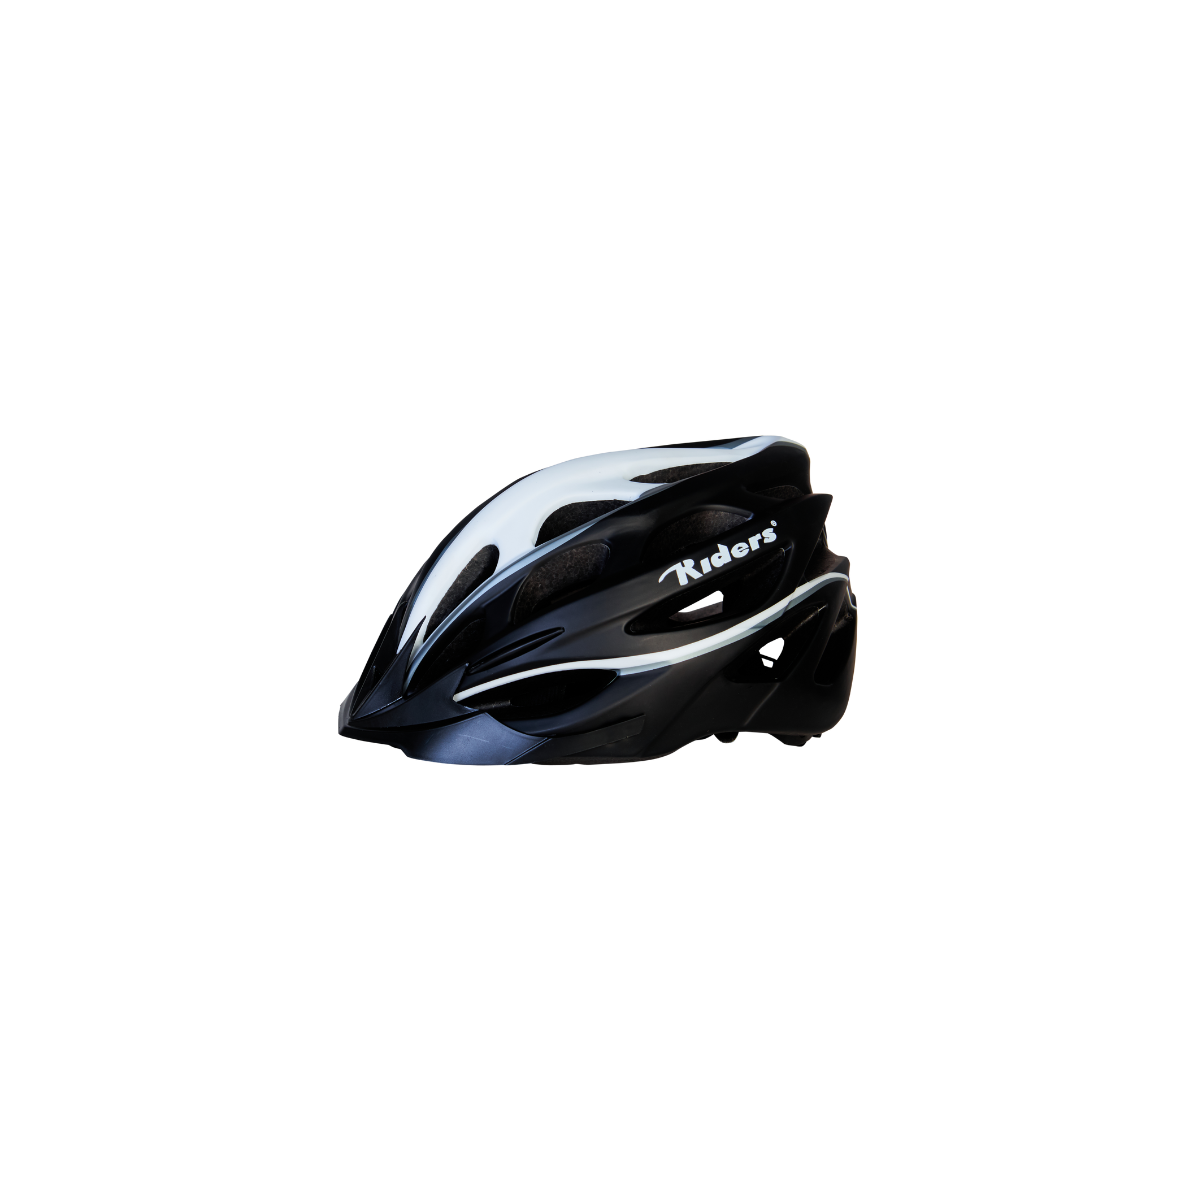 Adult Bicycle Adjustable Helmet - Medium